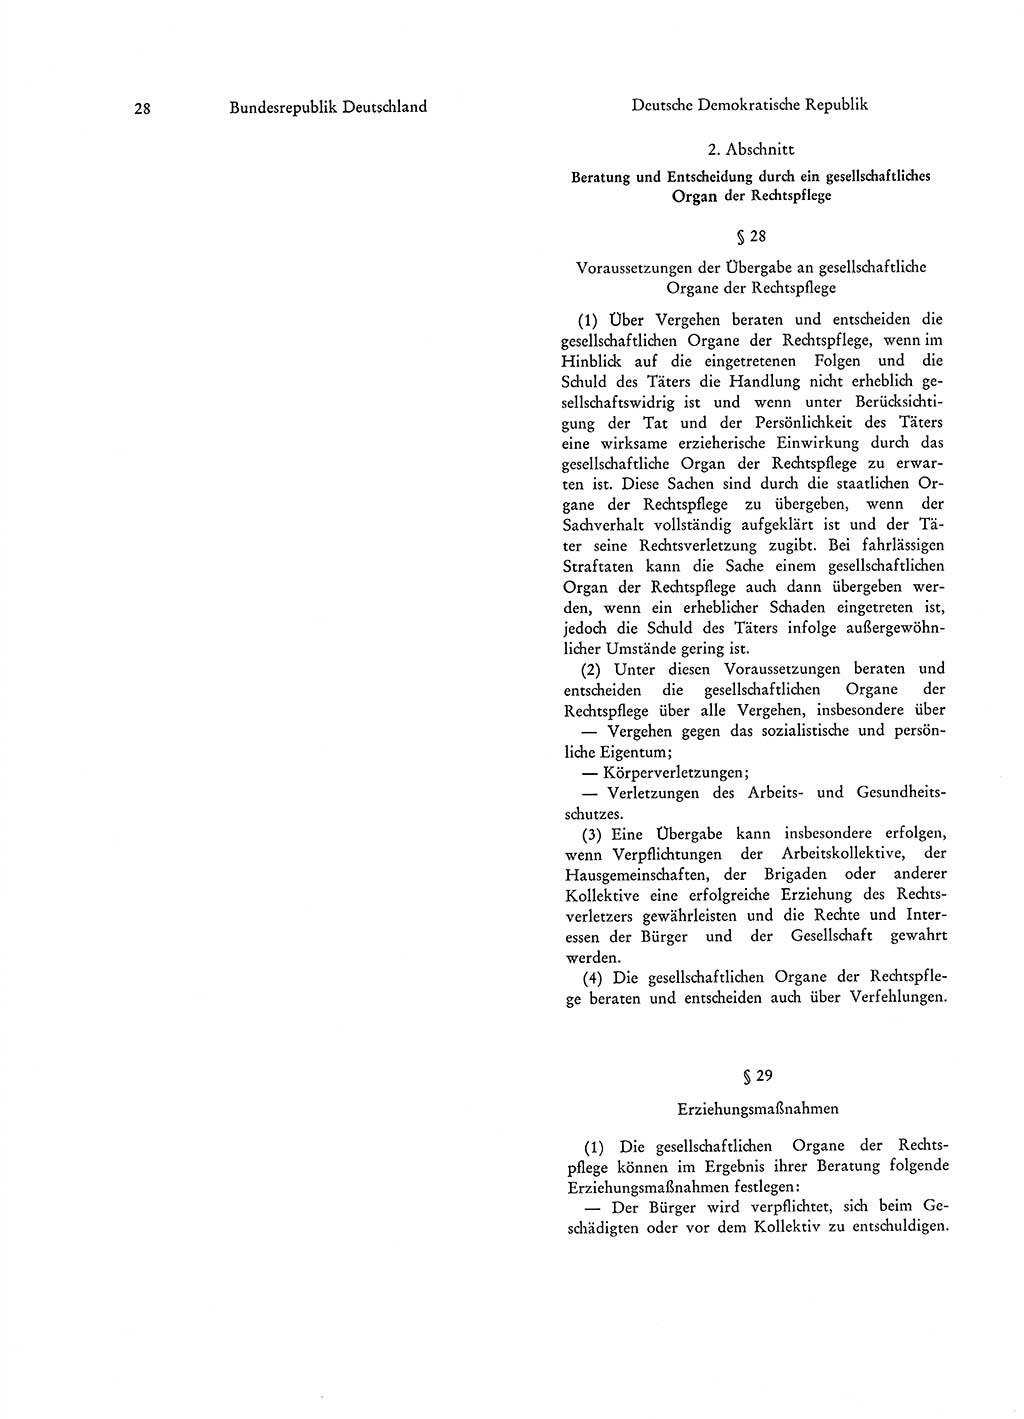 Strafgesetzgebung in Deutschland [Bundesrepublik Deutschland (BRD) und Deutsche Demokratische Republik (DDR)] 1972, Seite 28 (Str.-Ges. Dtl. StGB BRD DDR 1972, S. 28)